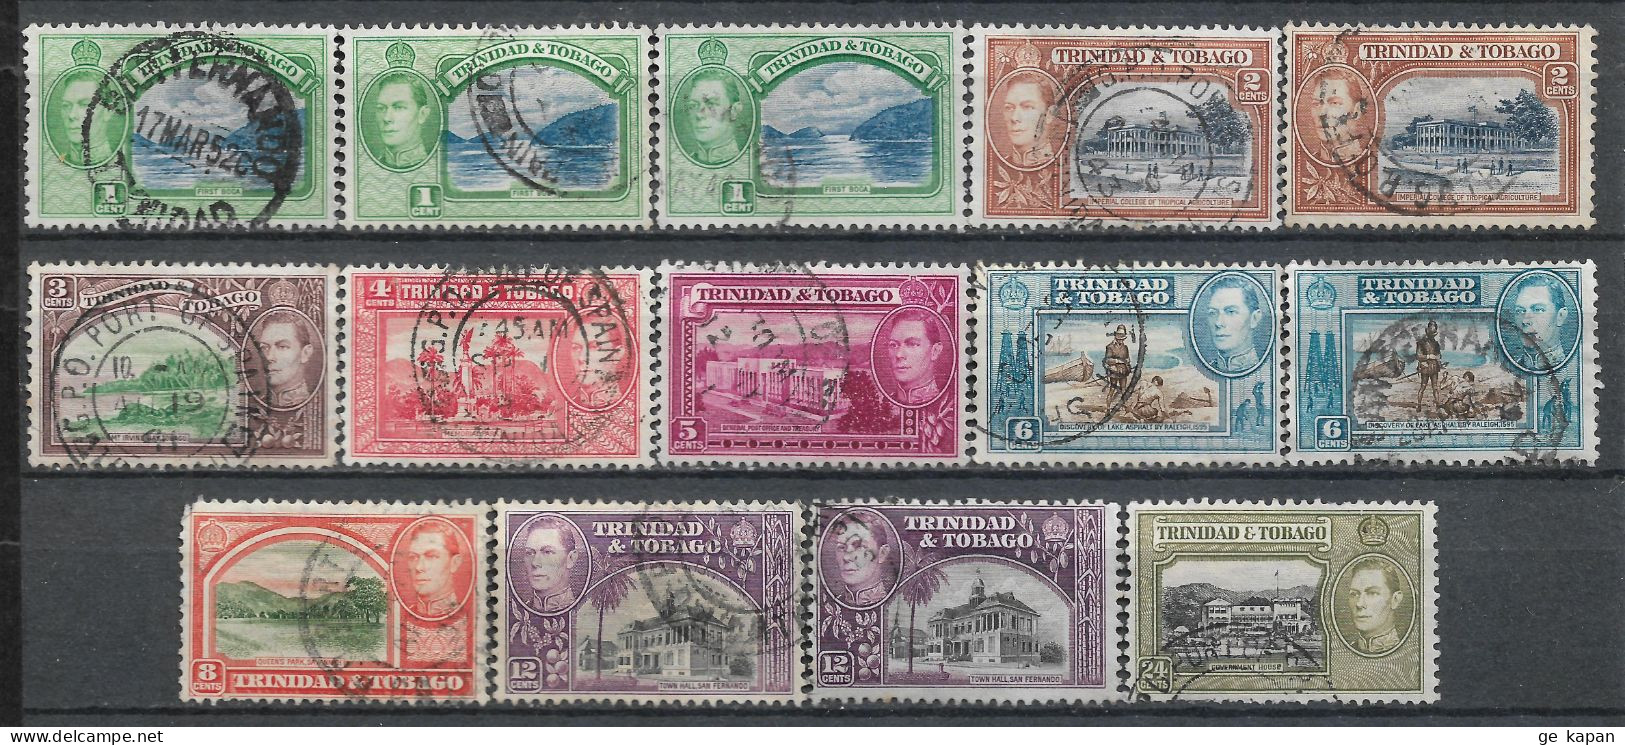 1938-1944 TRINIDAD & TOBAGO SET OF 14 USED STAMPS (Michel # 131,132,134,136-139,140a,140b,141) CV €5.90 - Trinidad & Tobago (...-1961)